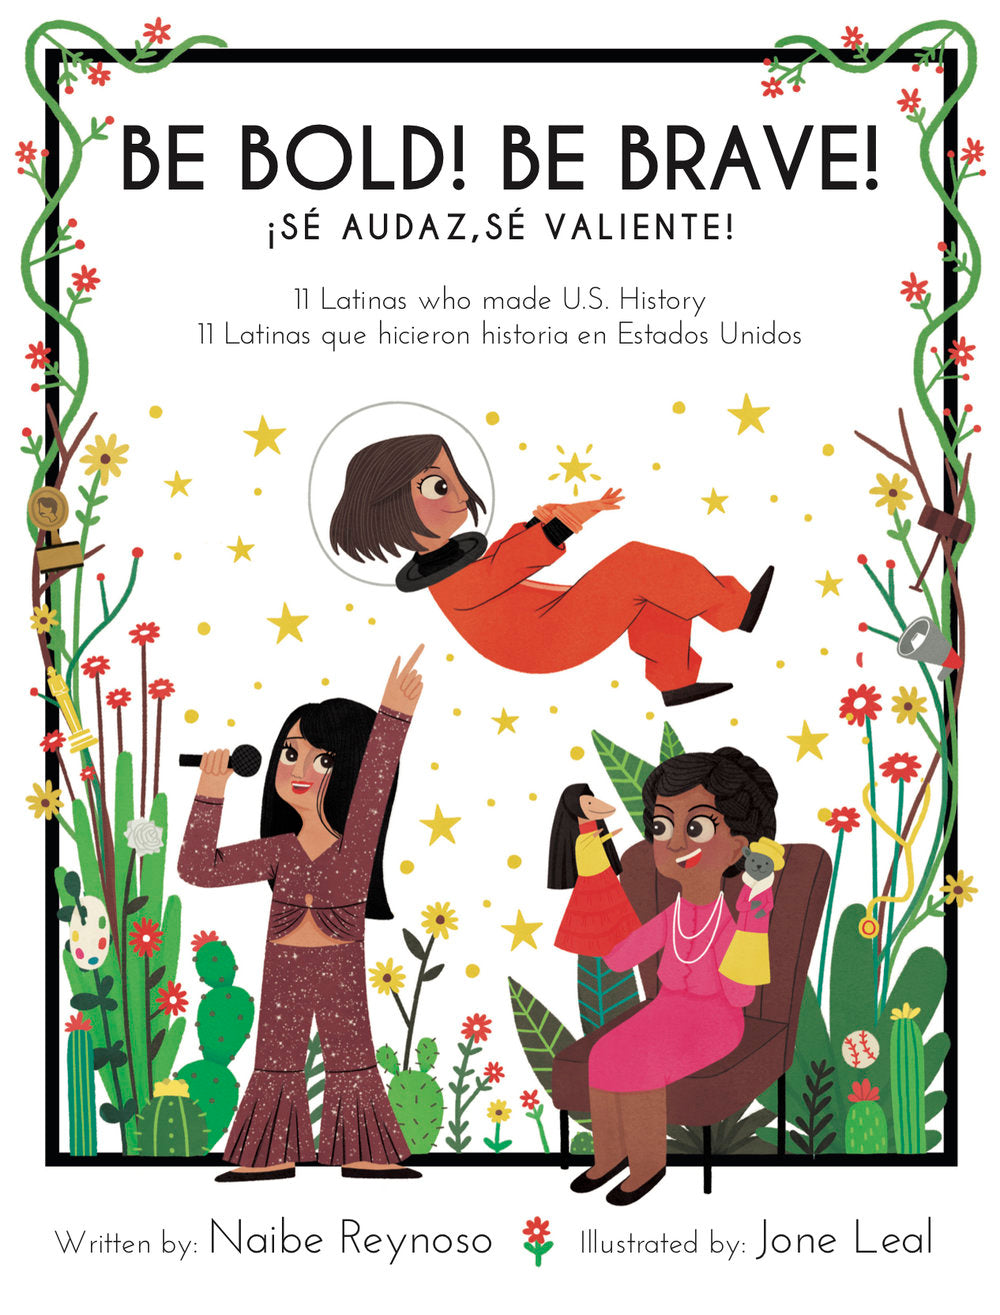 Be Bold! Be Brave! 11 Latinas Who Made U.S. History / ¡Sé audaz, sé valiente! 11 Latinas que hicieron historia en los Estados Unidos